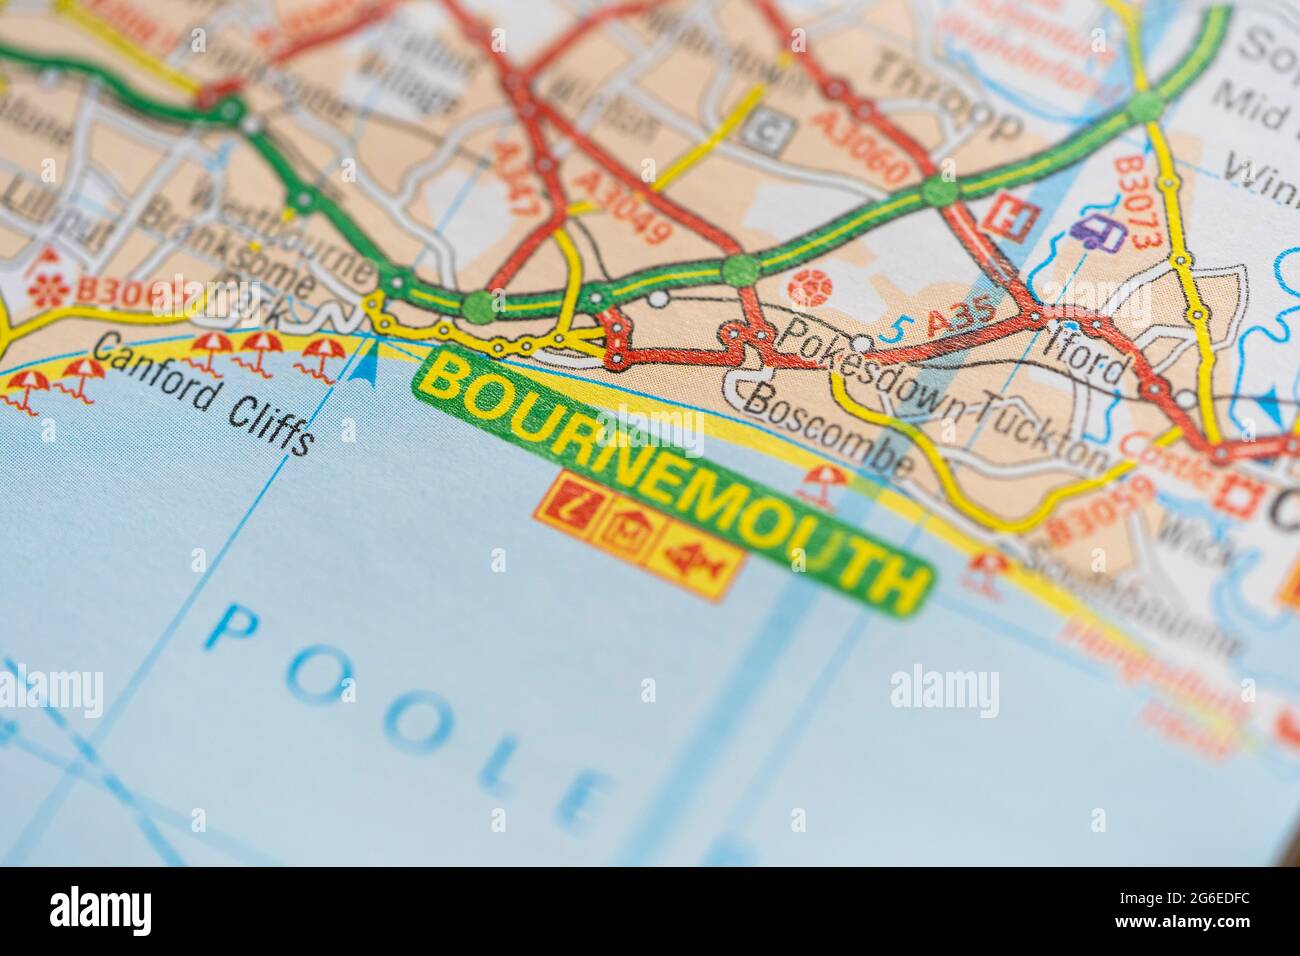 Eine Makroansicht einer Seite in einem gedruckten Roadmap-Atlas, der die Küstenstadt Bournemouth in England zeigt Stockfoto